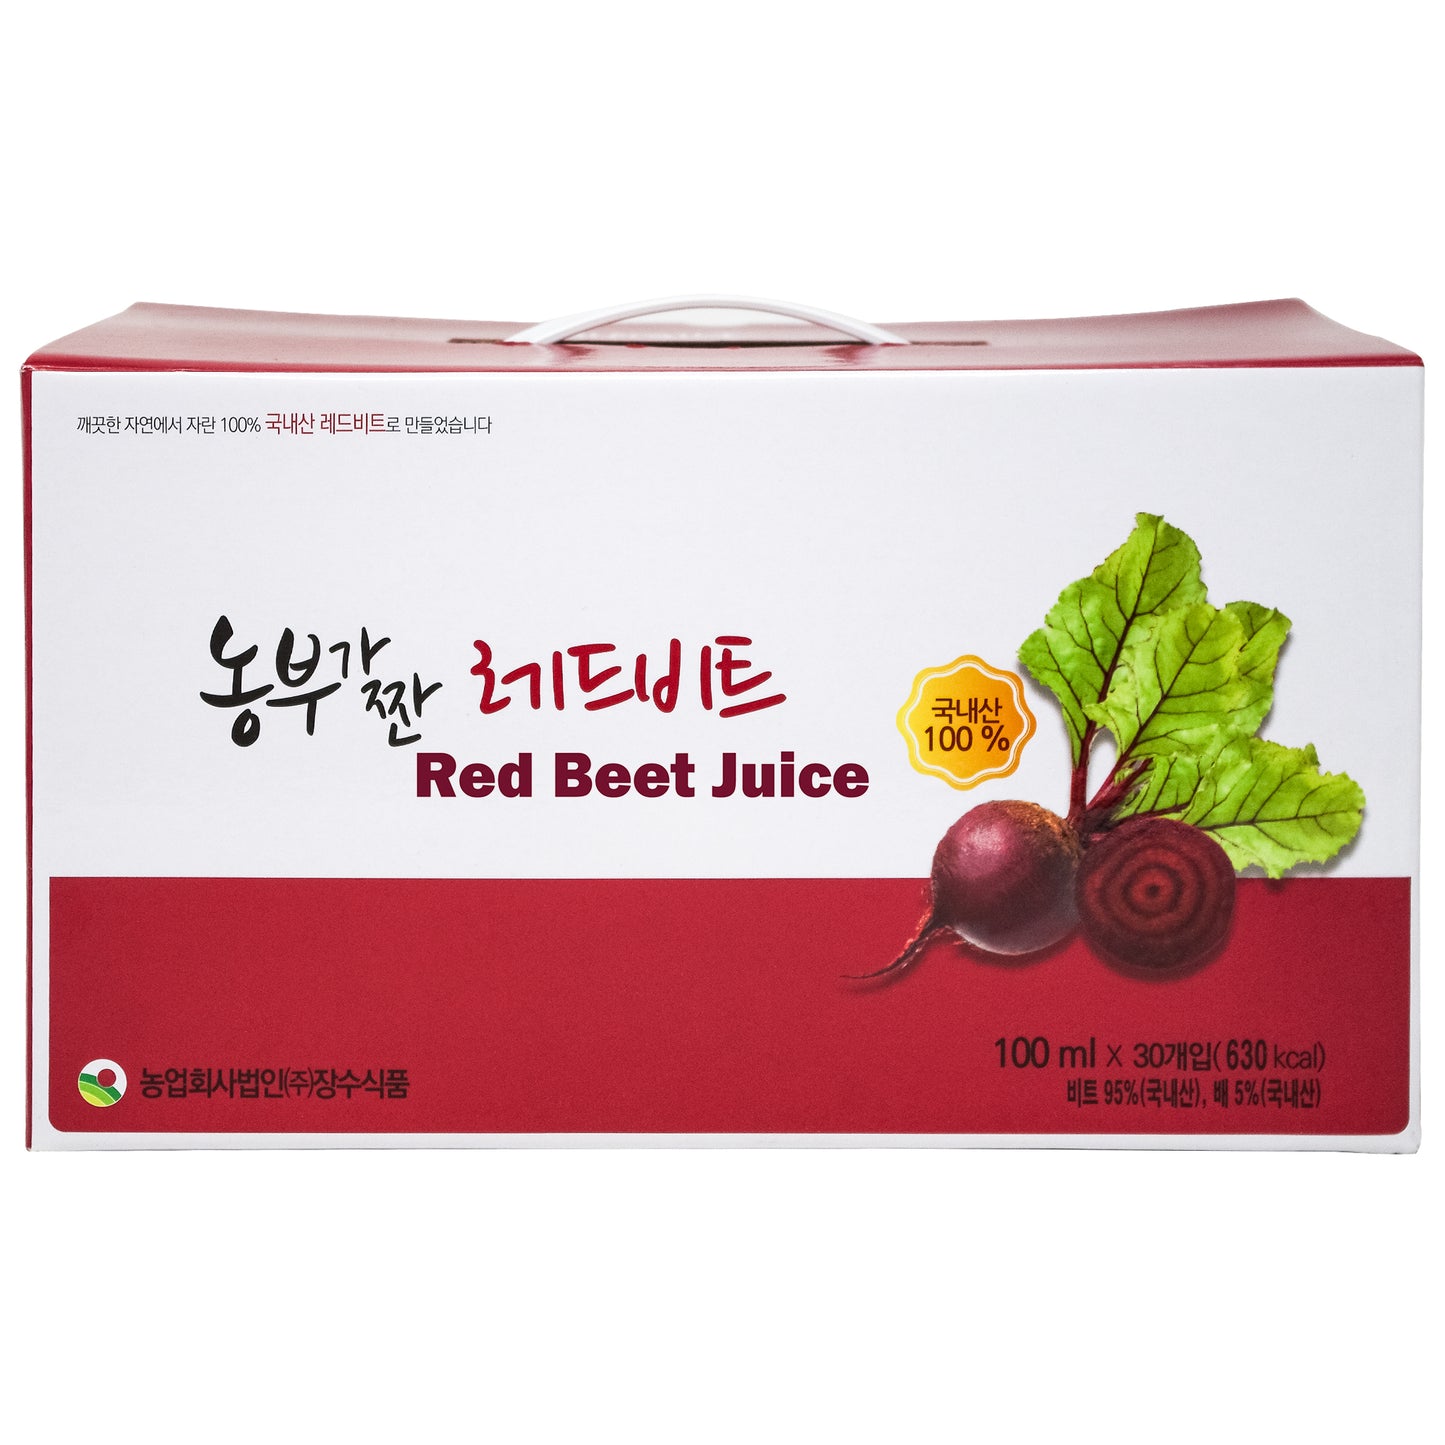 Korean Juice RED BEET JUICE  Squeezed by Farmer, 3.4oz per Pack, 30 Packs 레드비트